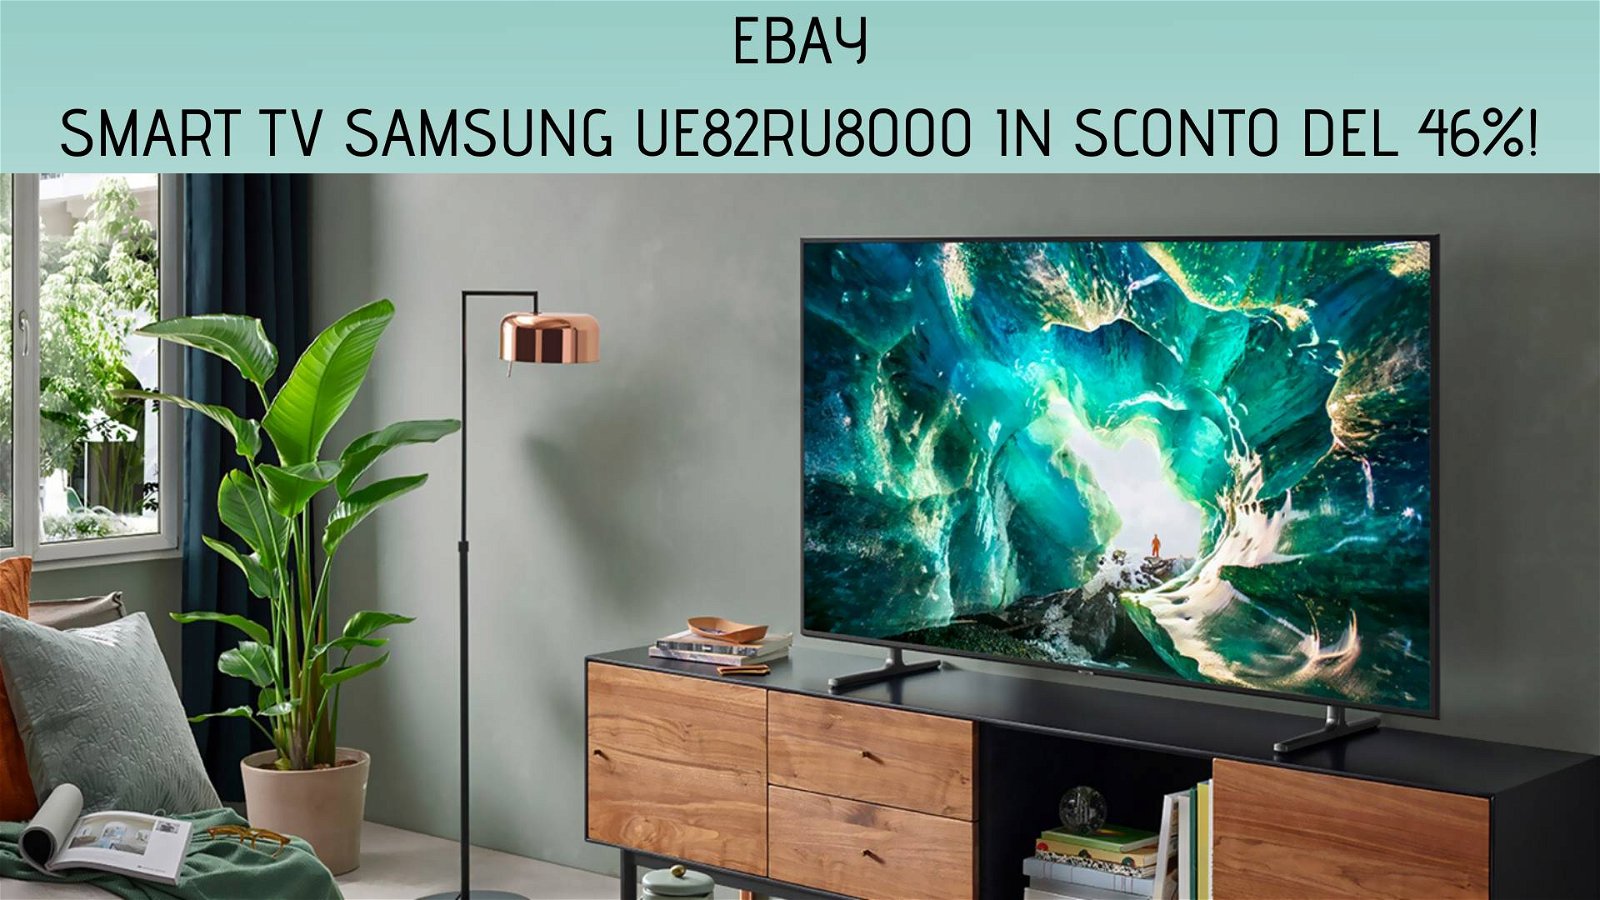 Immagine di eBay: prezzo shock per la smart TV Samsung UE82RU8000 da 82"! 